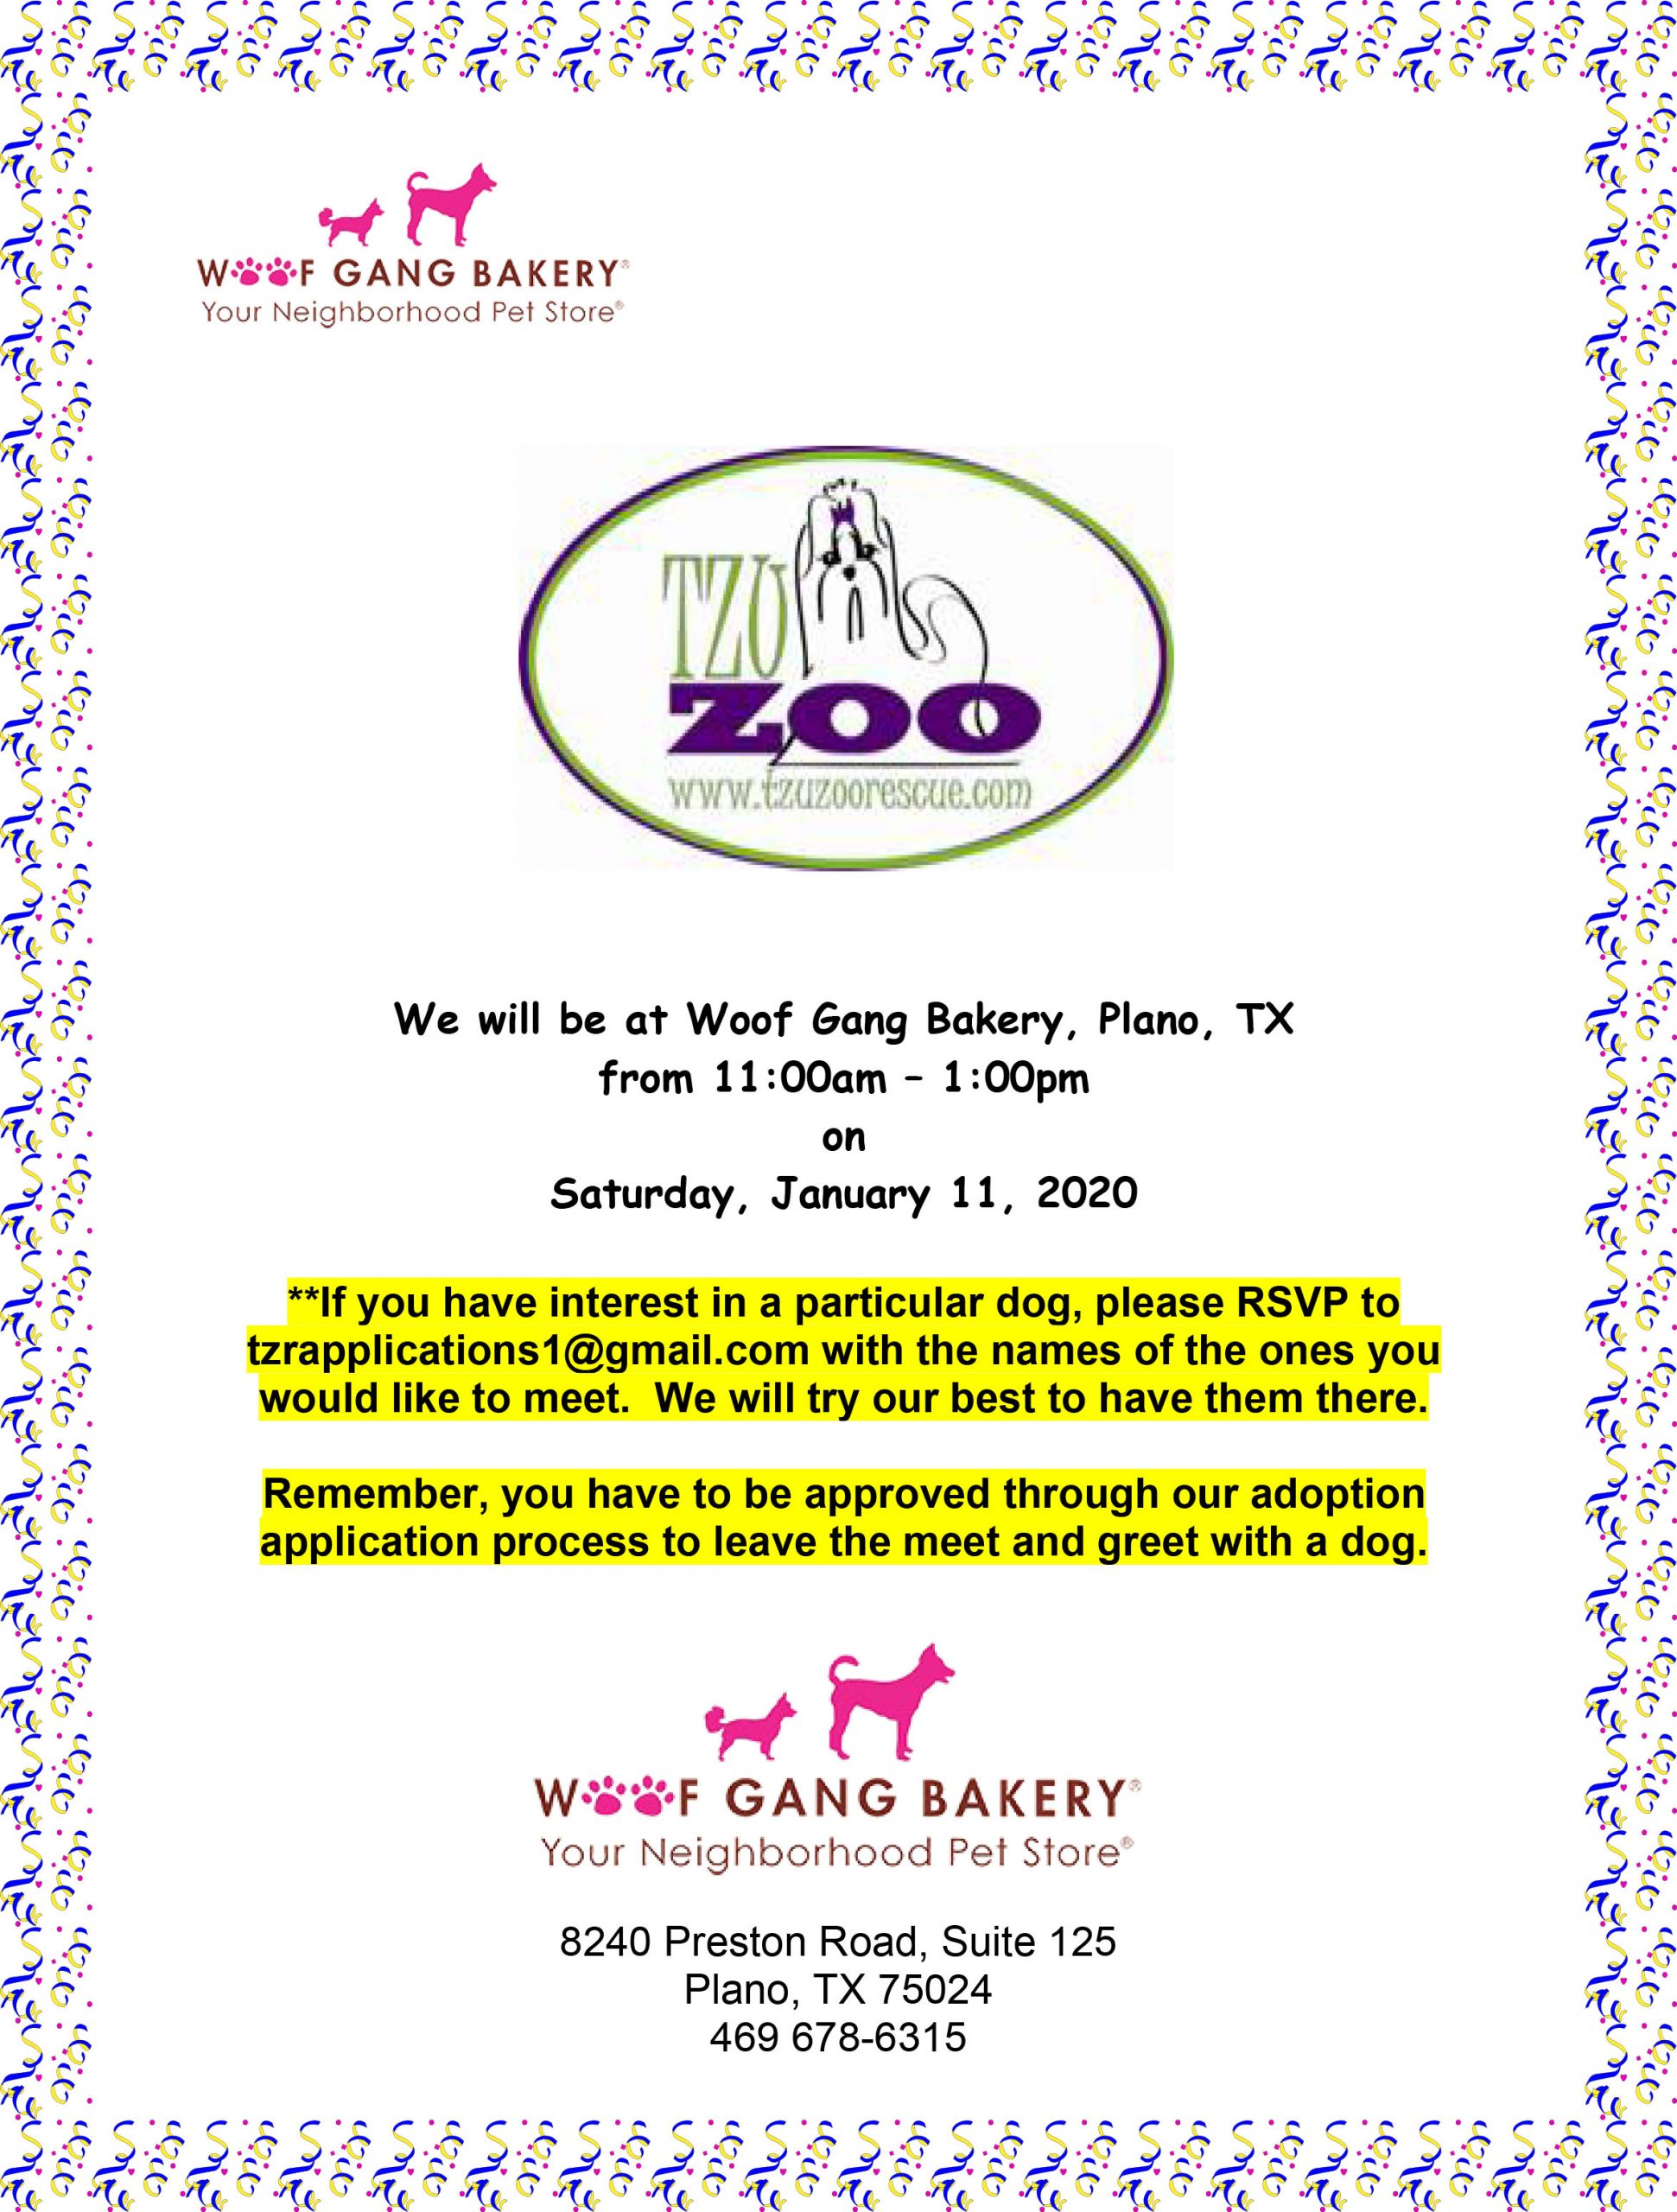 Meet & Greet, Woof Gang Bakery - Plano, TX @ Woof Gang Bakery